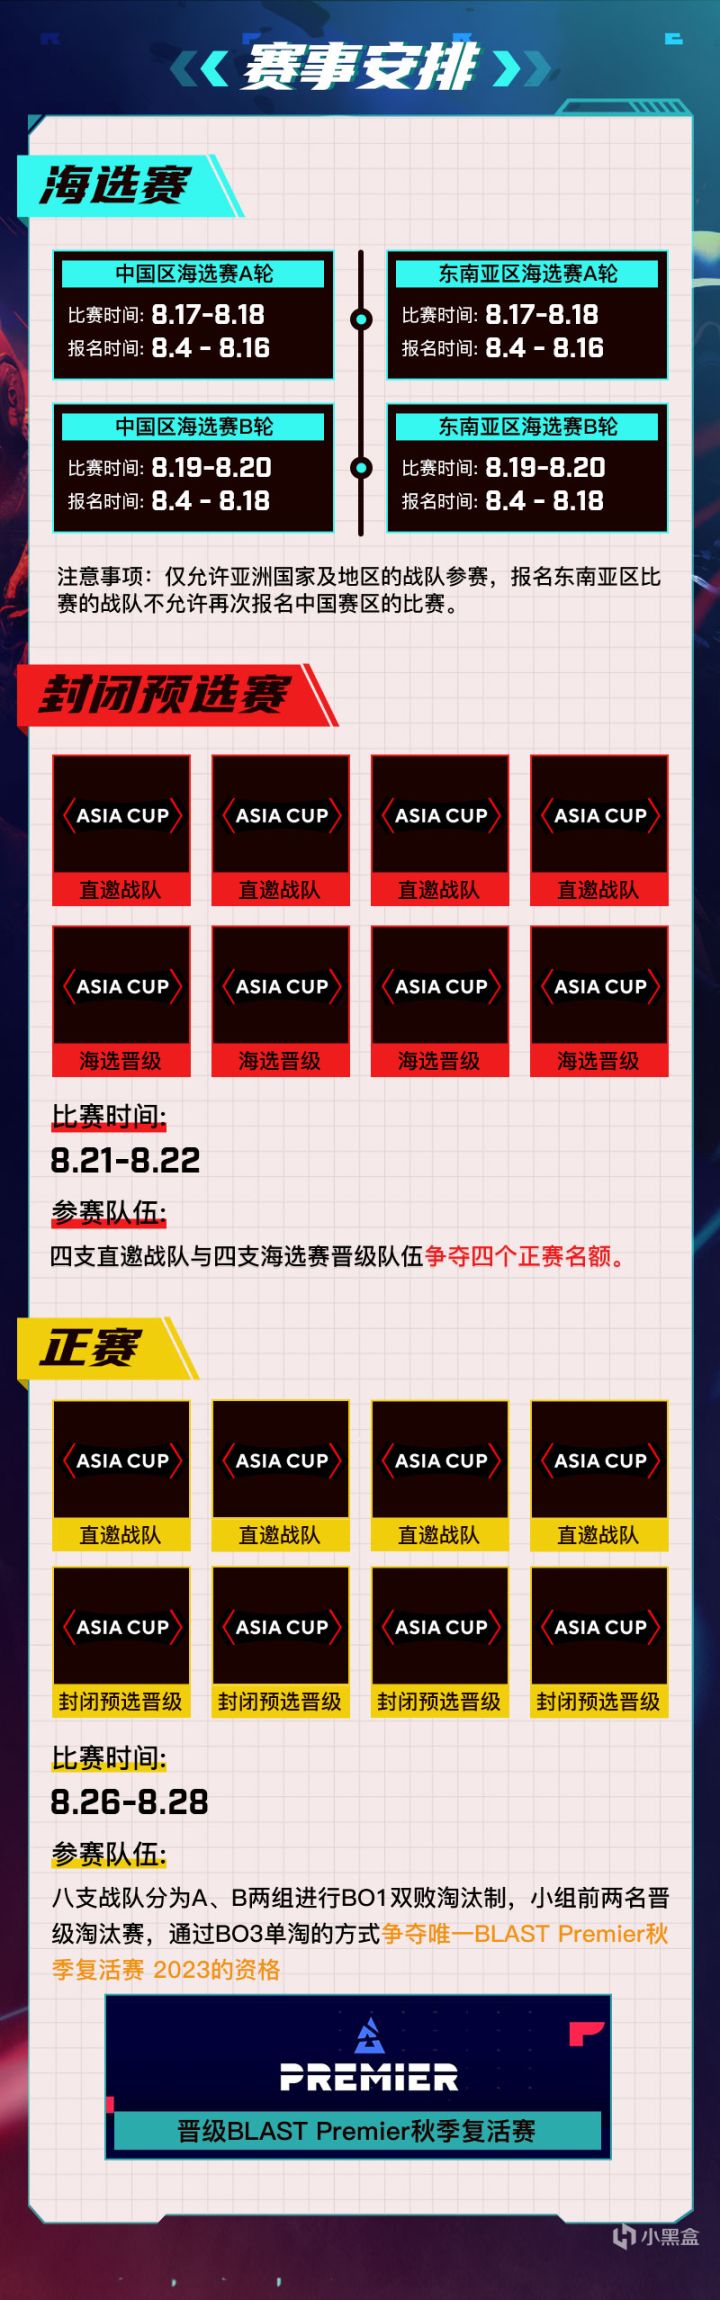 【CS:GO】2023 5E对战平台 BLAST亚洲预选赛现已开启报名！-第1张